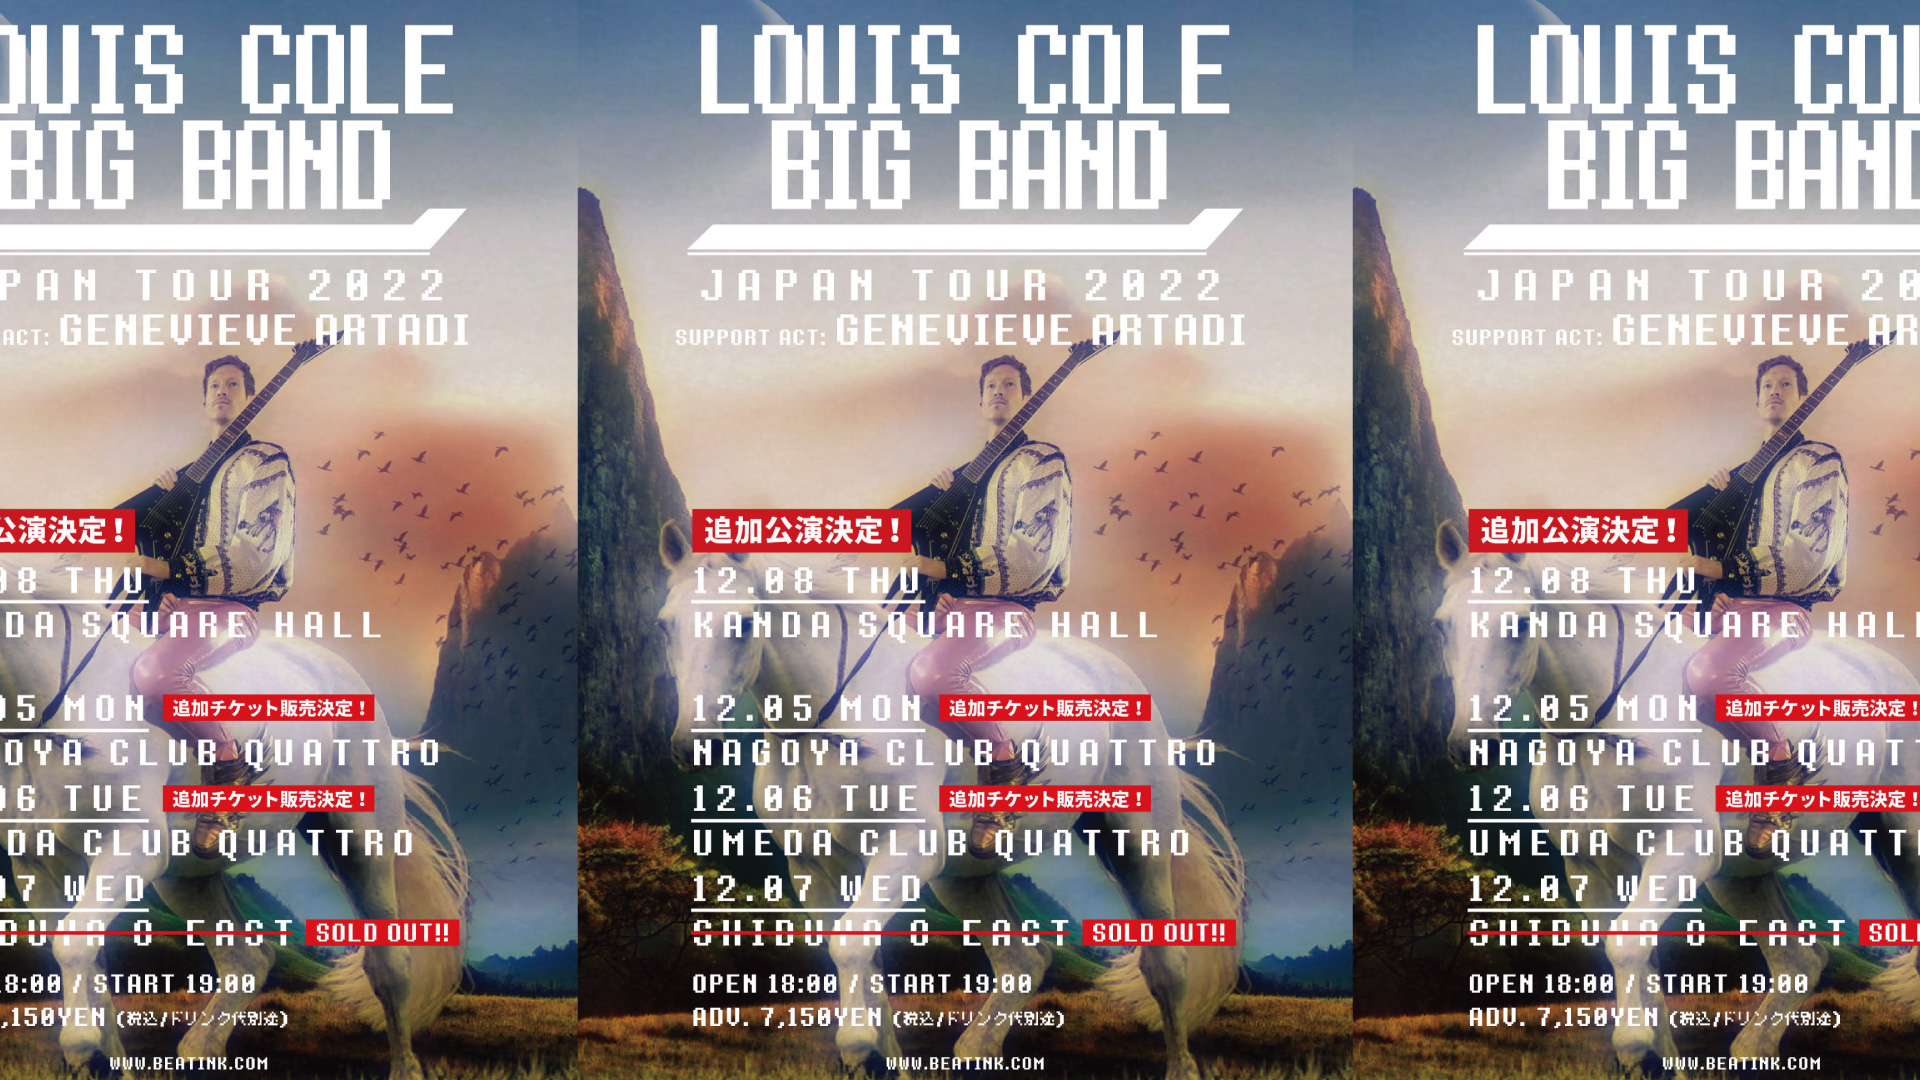 LOUIS COLE BIG BAND JAPAN TOUR 2022